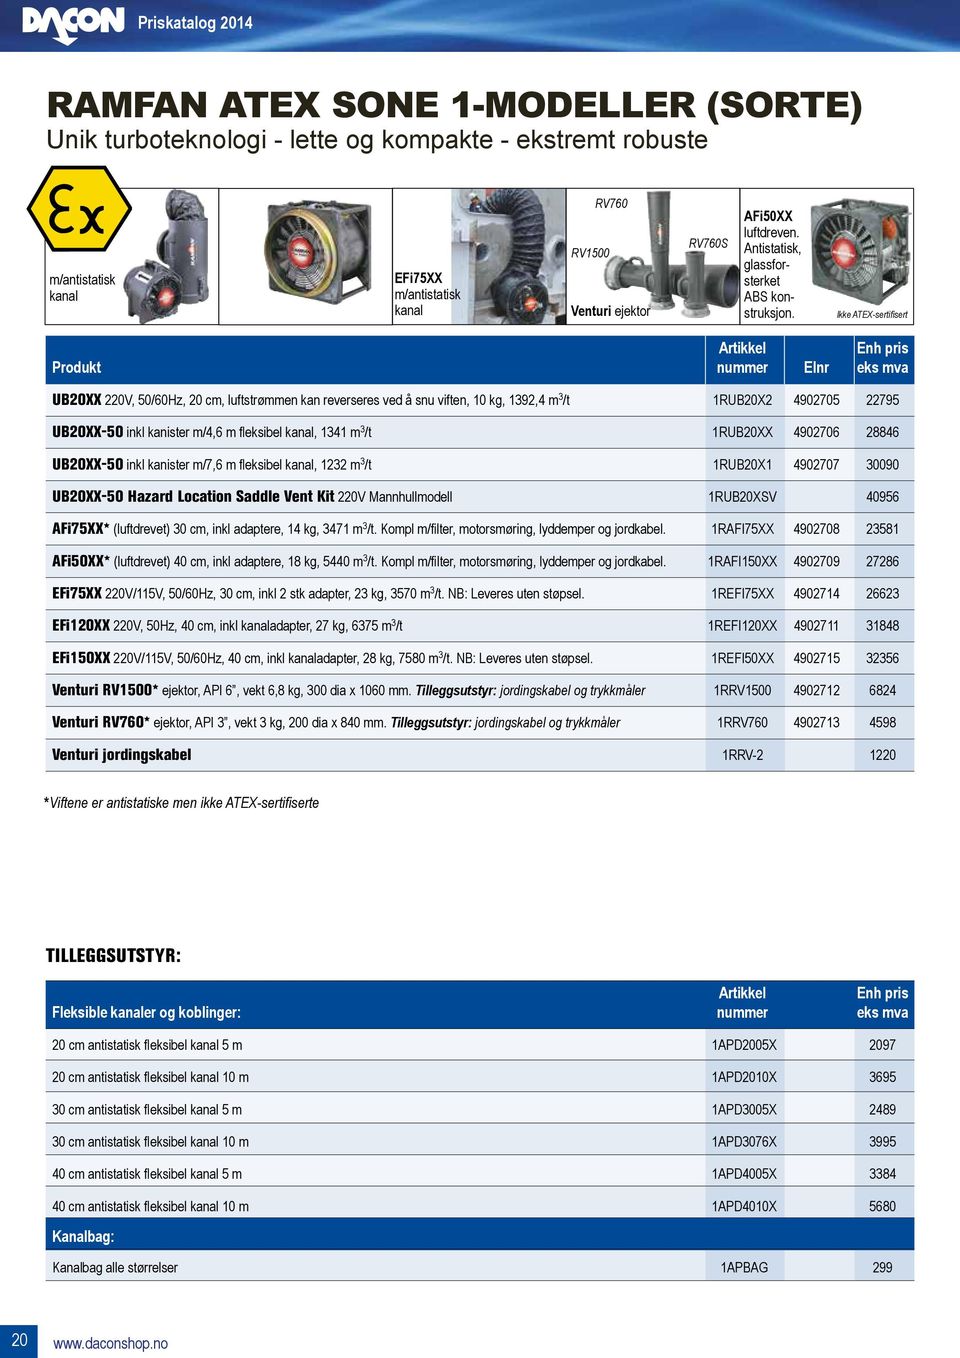 Ikke ATEX-sertifisert Artikkel enh pris Produkt nummer Elnr eks mva UB20XX 220V, 50/60Hz, 20 cm, luftstrømmen kan reverseres ved å snu viften, 10 kg, 1392,4 m 3 /t 1RUB20X2 4902705 22795 UB20XX-50